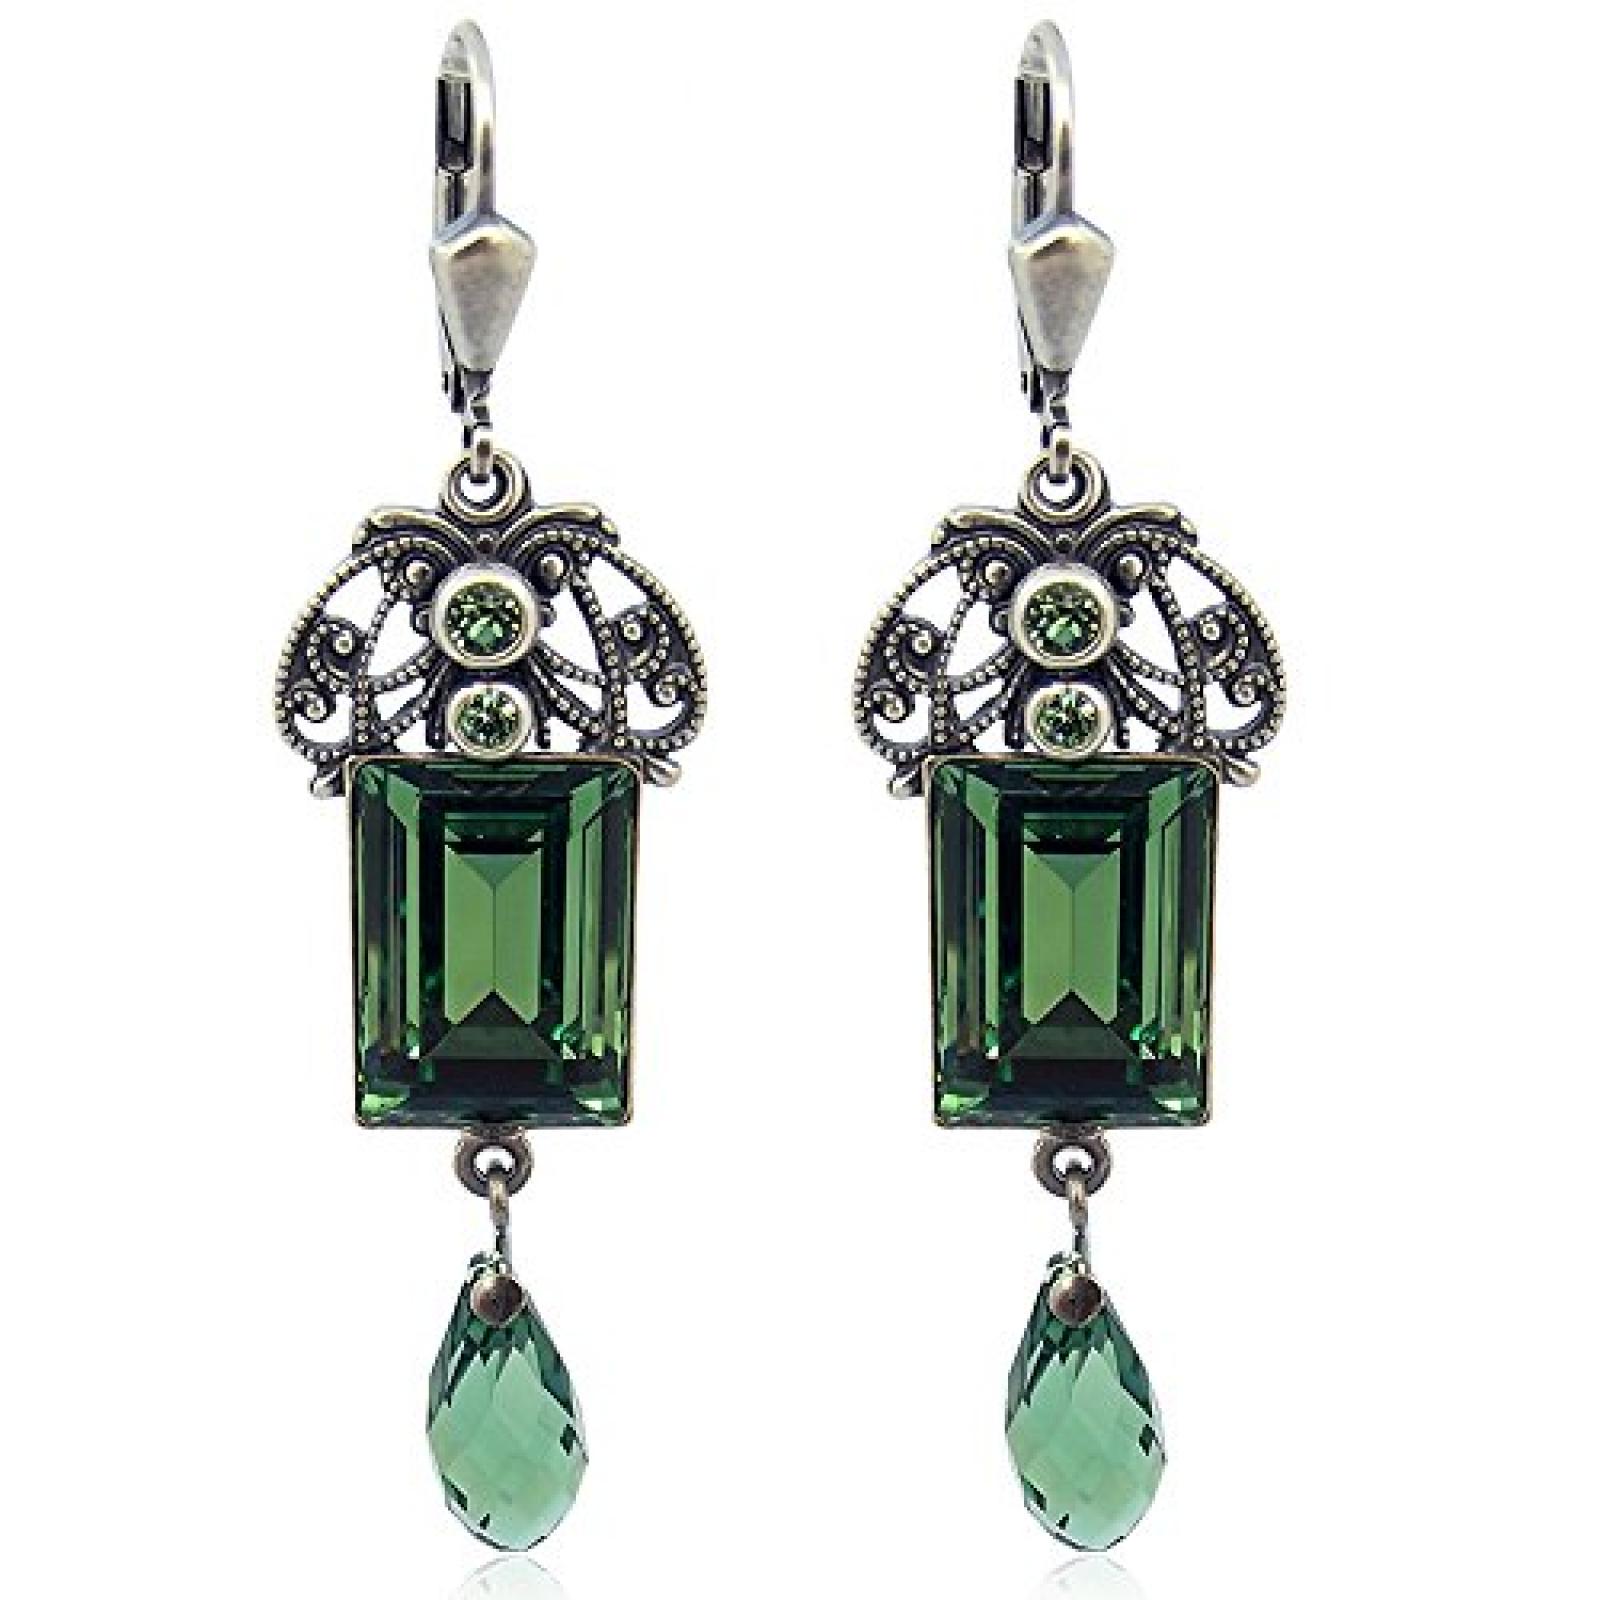 Ohrringe Jugendstil mit SWAROVSKI ELEMENTS - Farbe Silber Emerald - in Etui - Made in Germany 